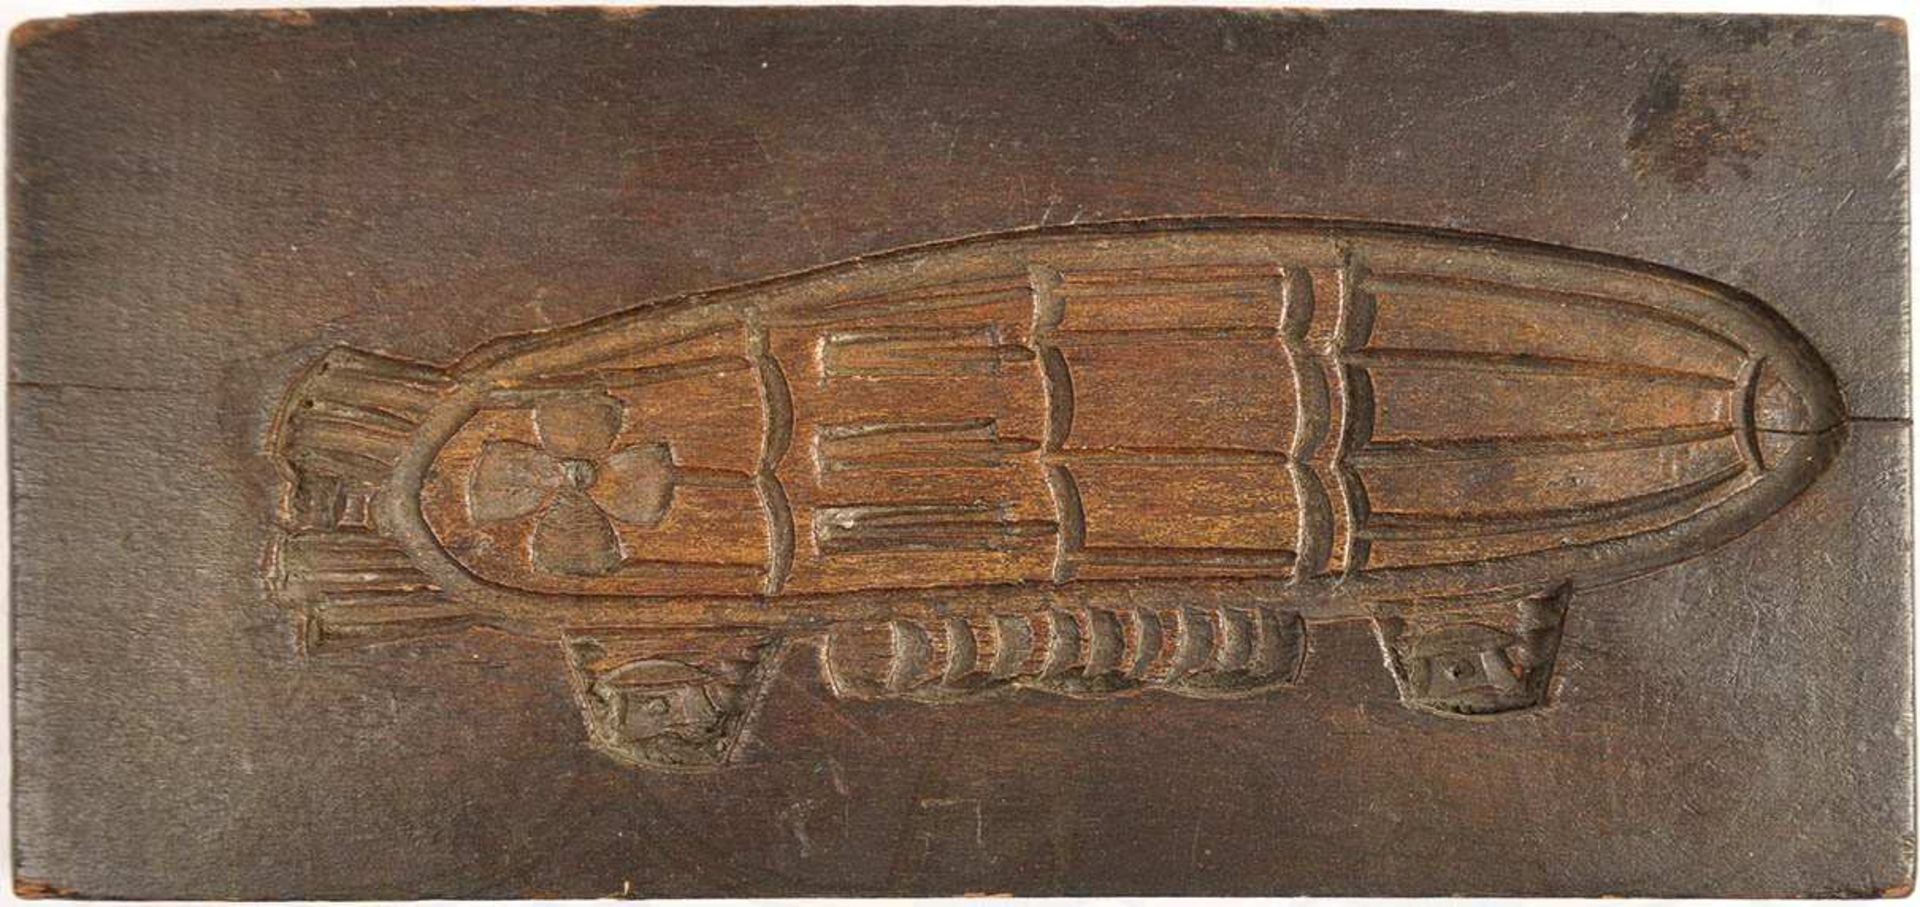 LEBKUCHEN-MODELL, in Holz geschnittene Form eines Zeppelins, um 1920, 12x27x3,5 cm < 1027409F,